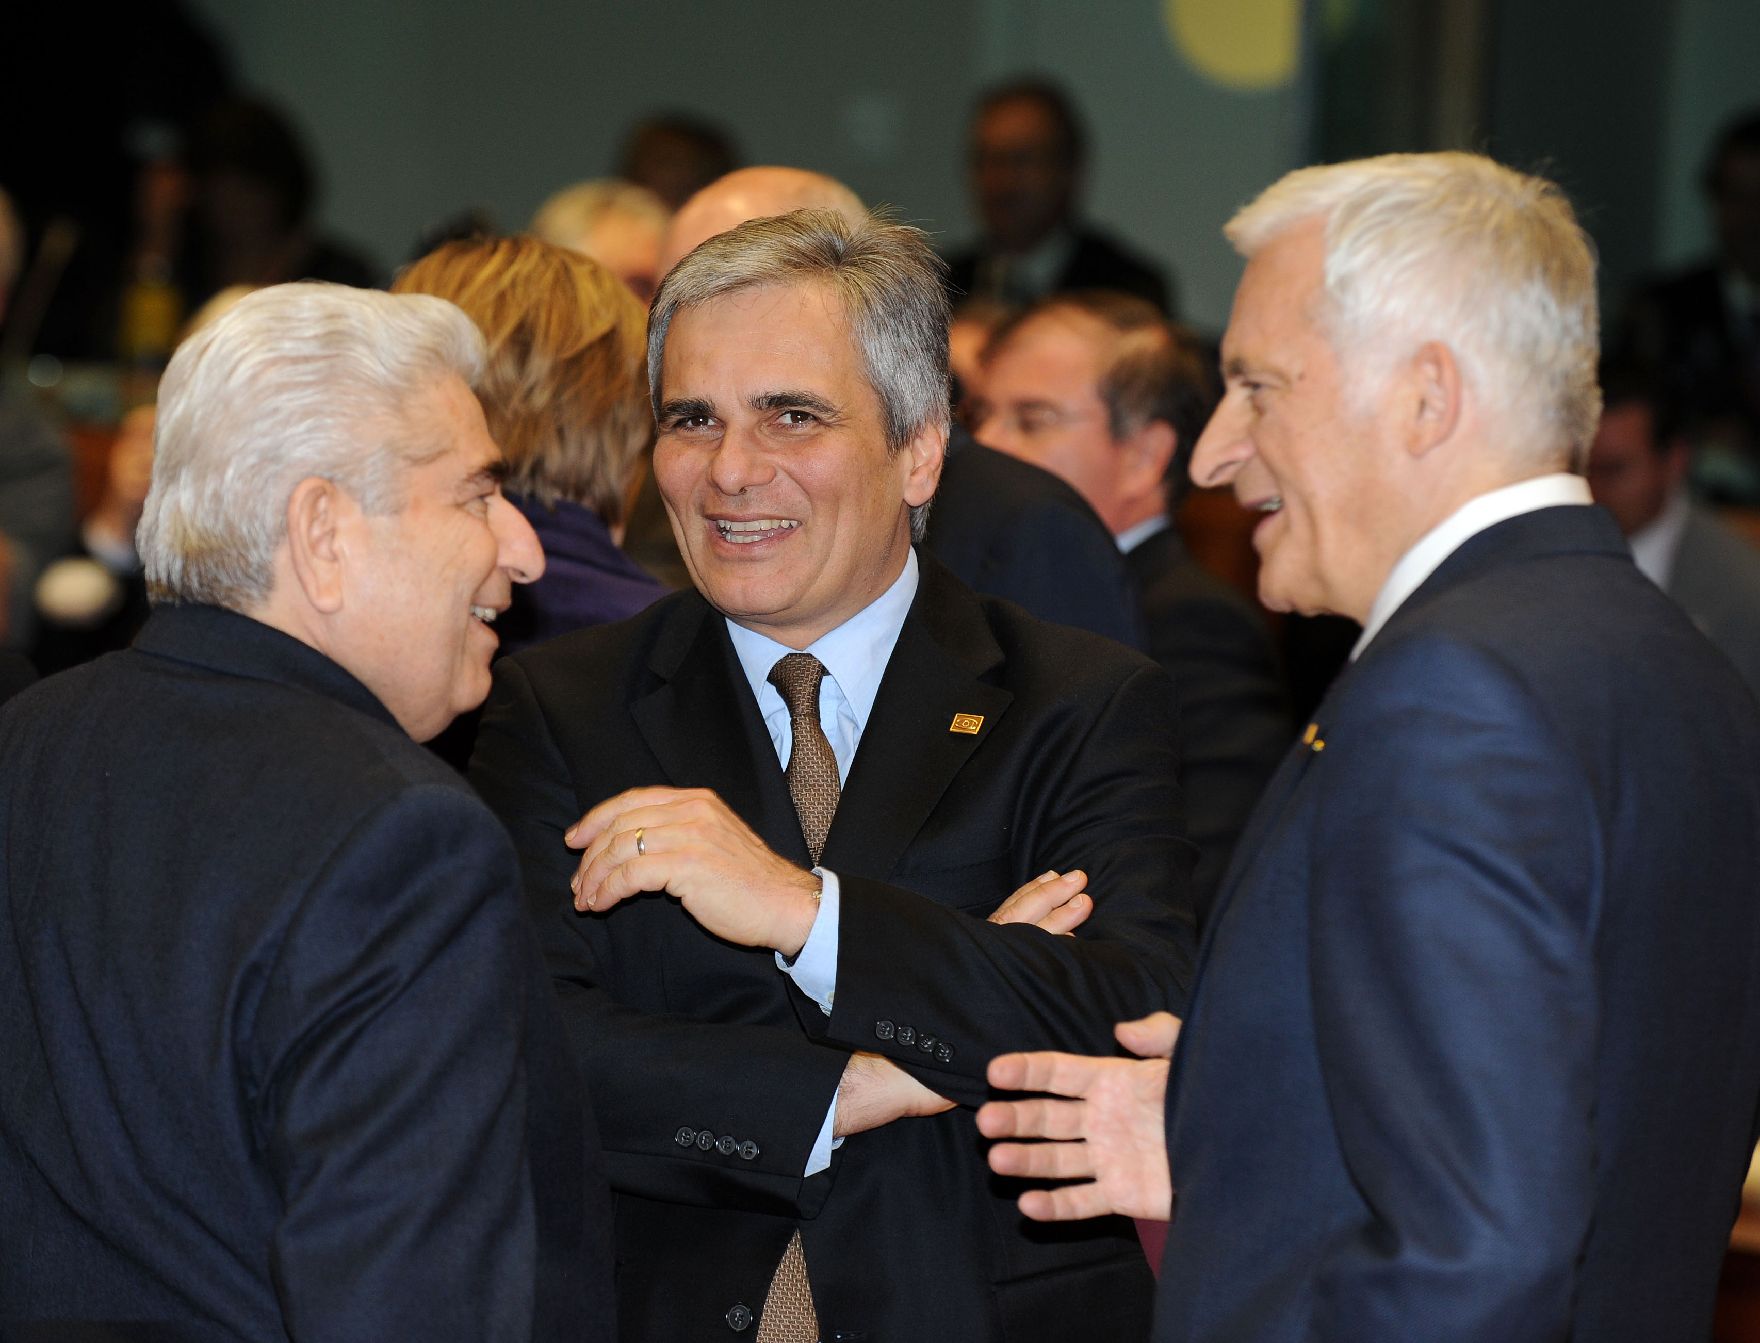 Donnerstag, den 16. Dezember 2010 fand in Brüssel, Belgien die Sitzung des Europäischen Rates der EU-Staats- und Regierungschefs statt. Im Bild Bundeskanzler Werner Faymann (M) mit dem EU-Parlamentspräsidenten Jerzy Buzek (R) und Zyperns Staatspräsidenten Demetris Christofias (L).